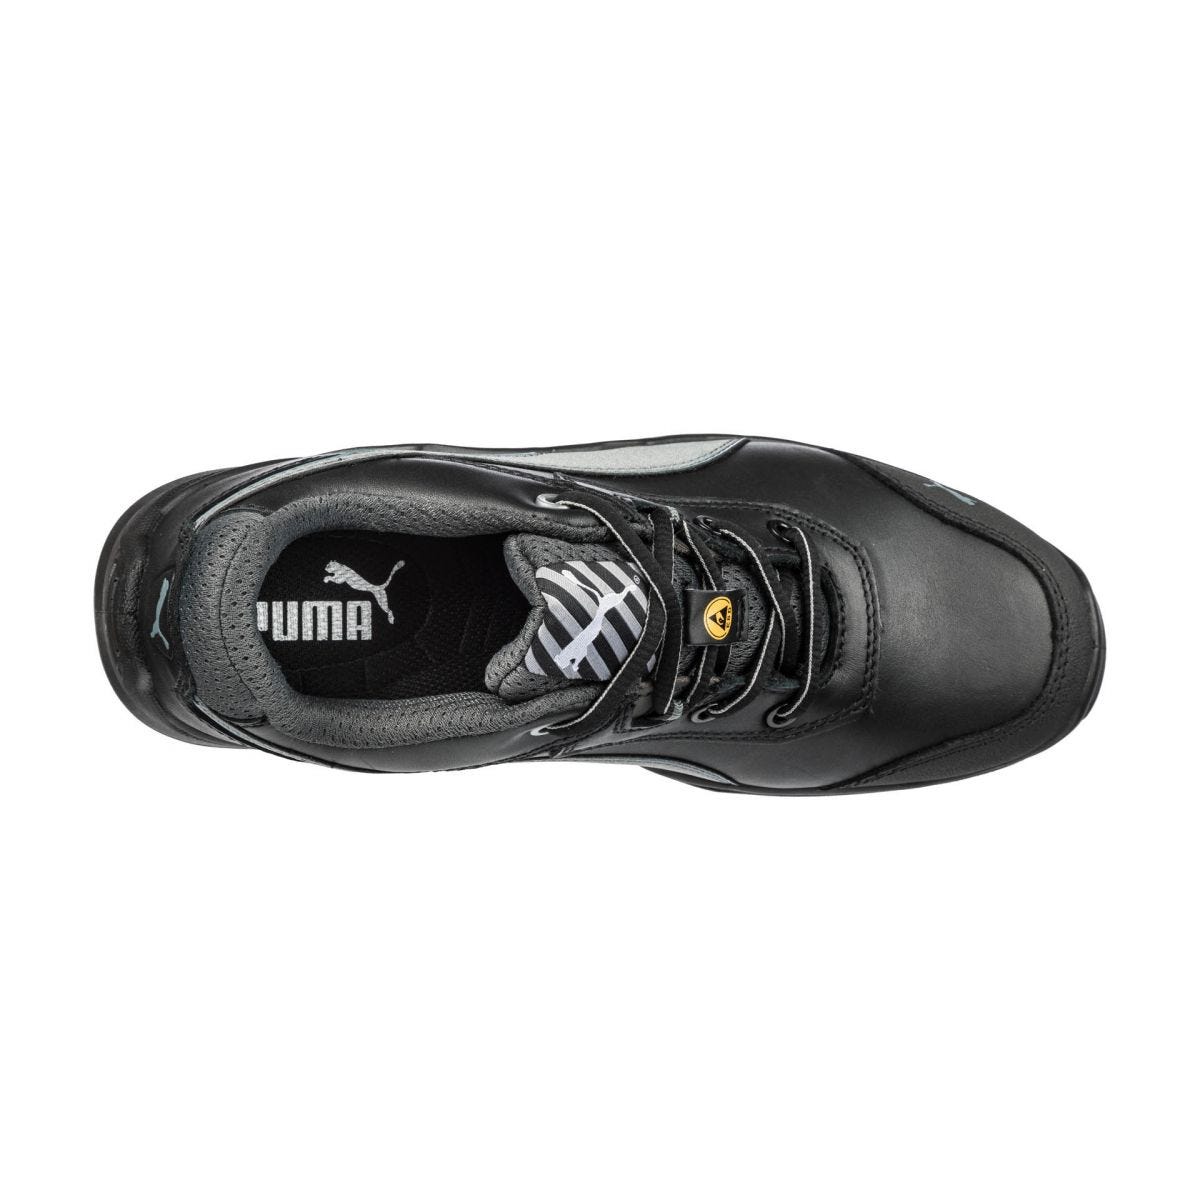 Chaussures de sécurité Argon RX low S3 ESD SRC noir - Puma - Taille 43 3